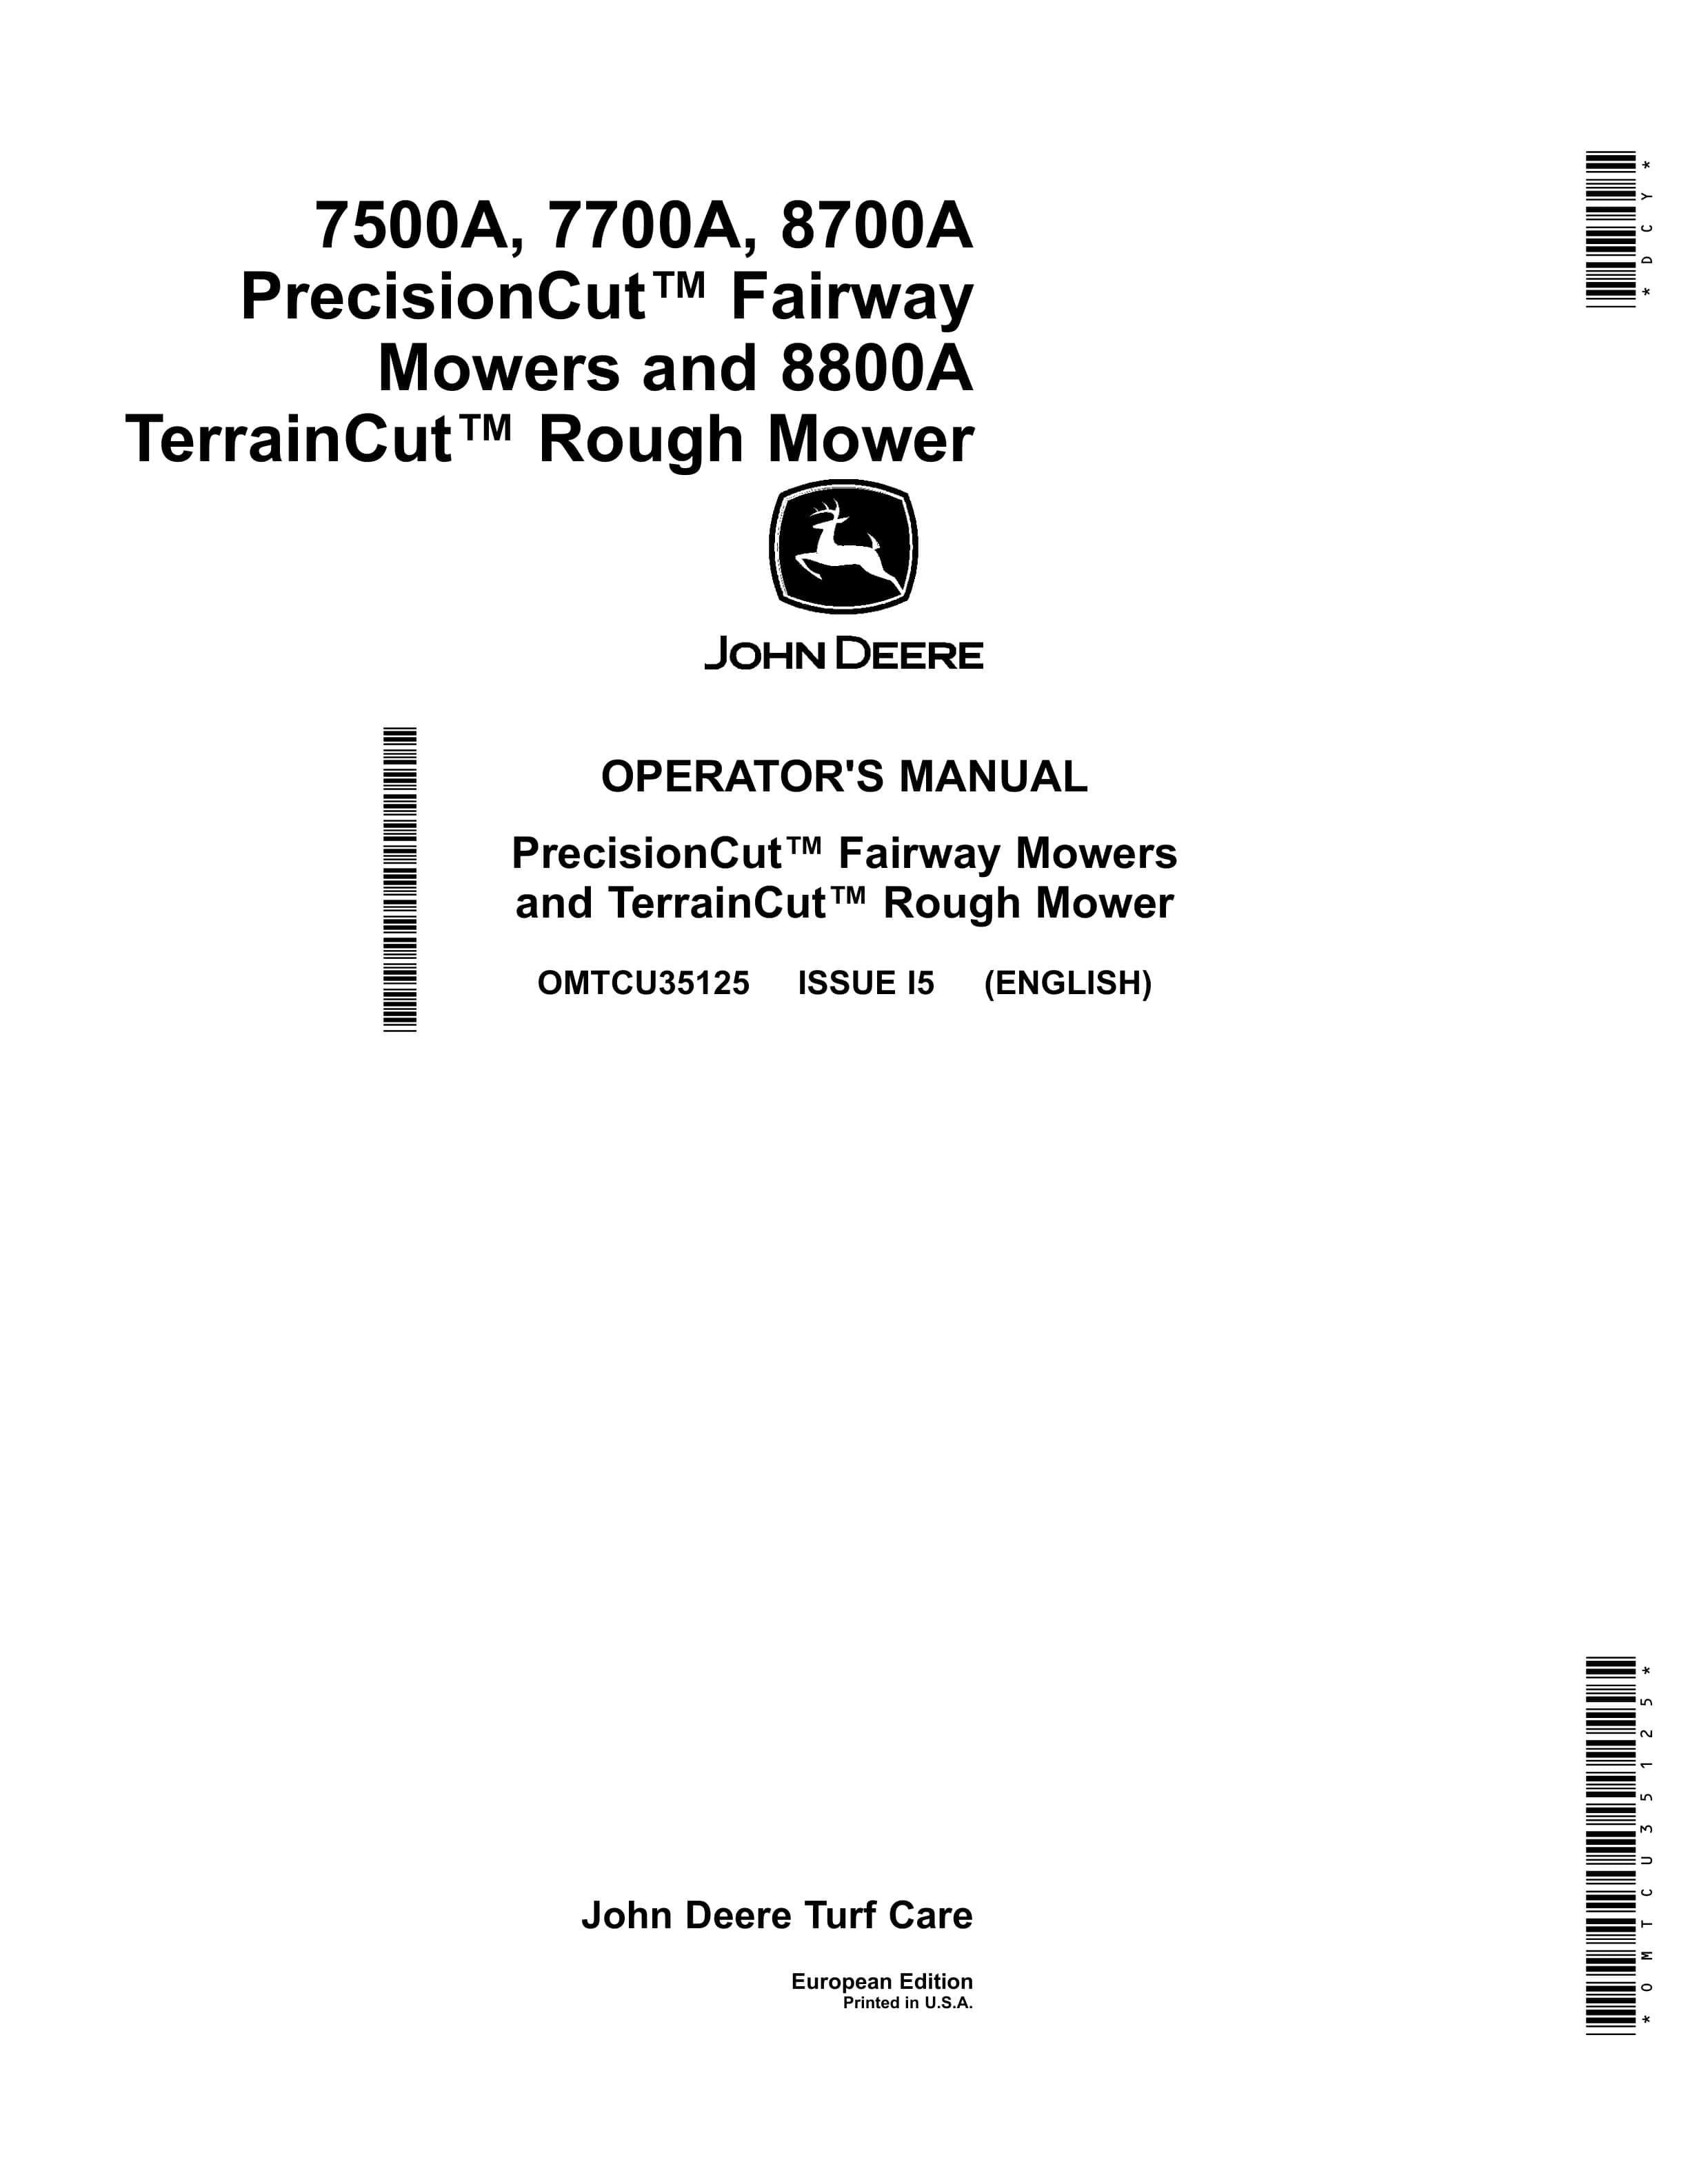 John Deere 7500A 7700A 8700A PrecisionCut Fairway Mowers and 8800A TerrainCut Rough Mower Operator Manual OMTCU35125 1